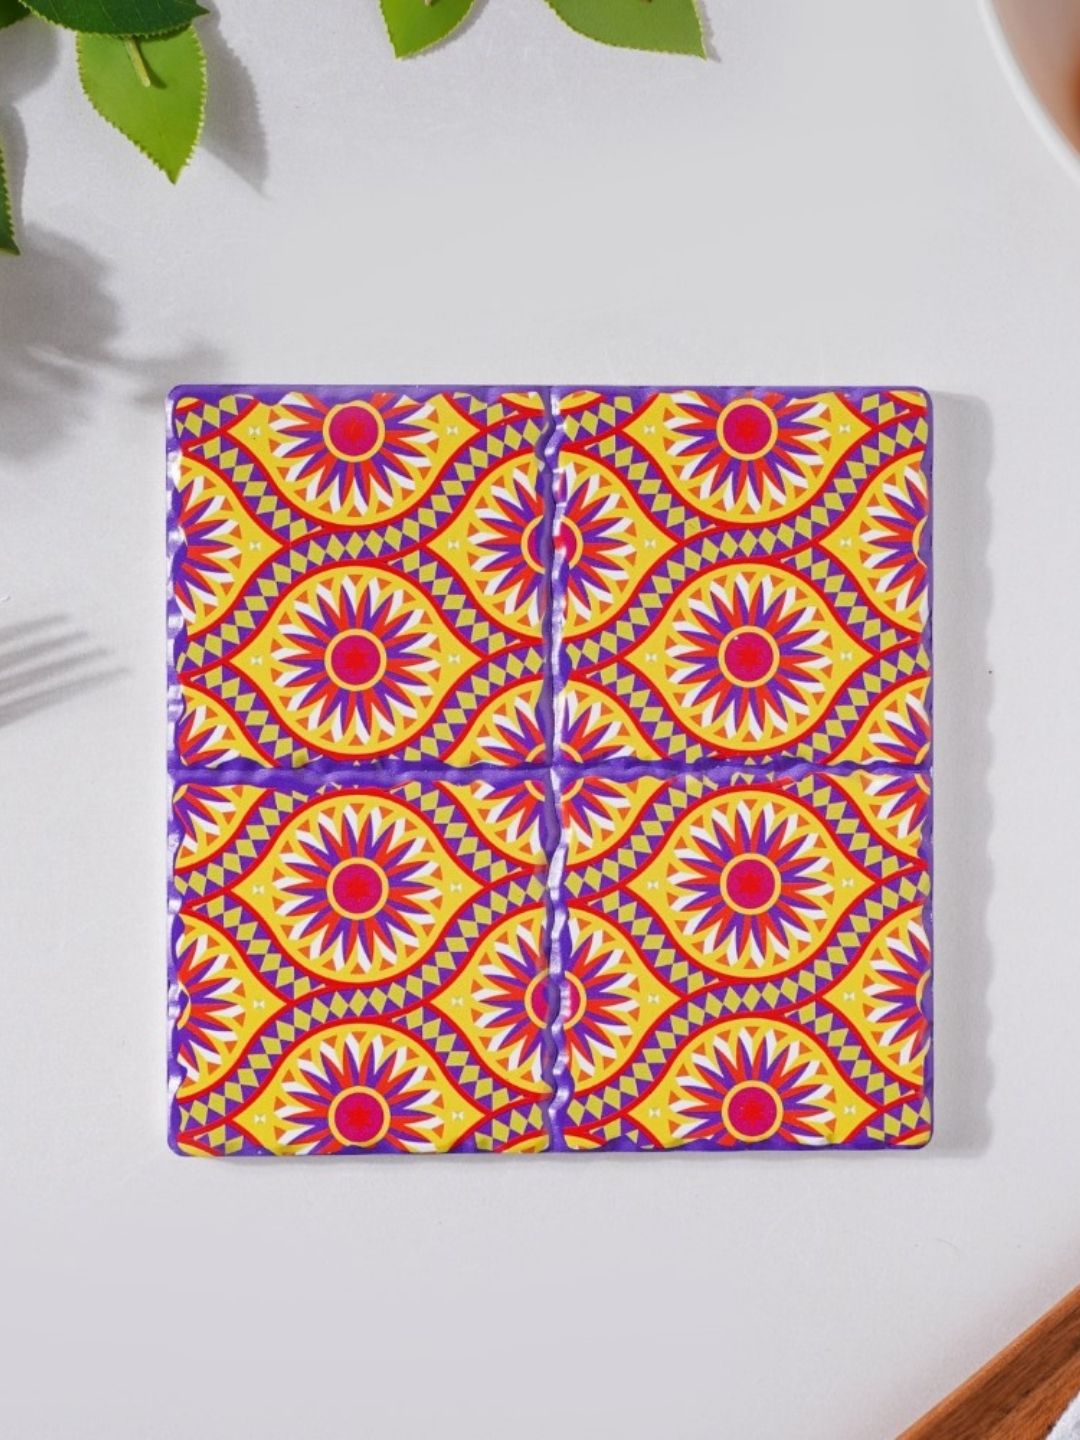 Nestasia Yellow Printed Ceramic Trivet Dining Essentials Price in India